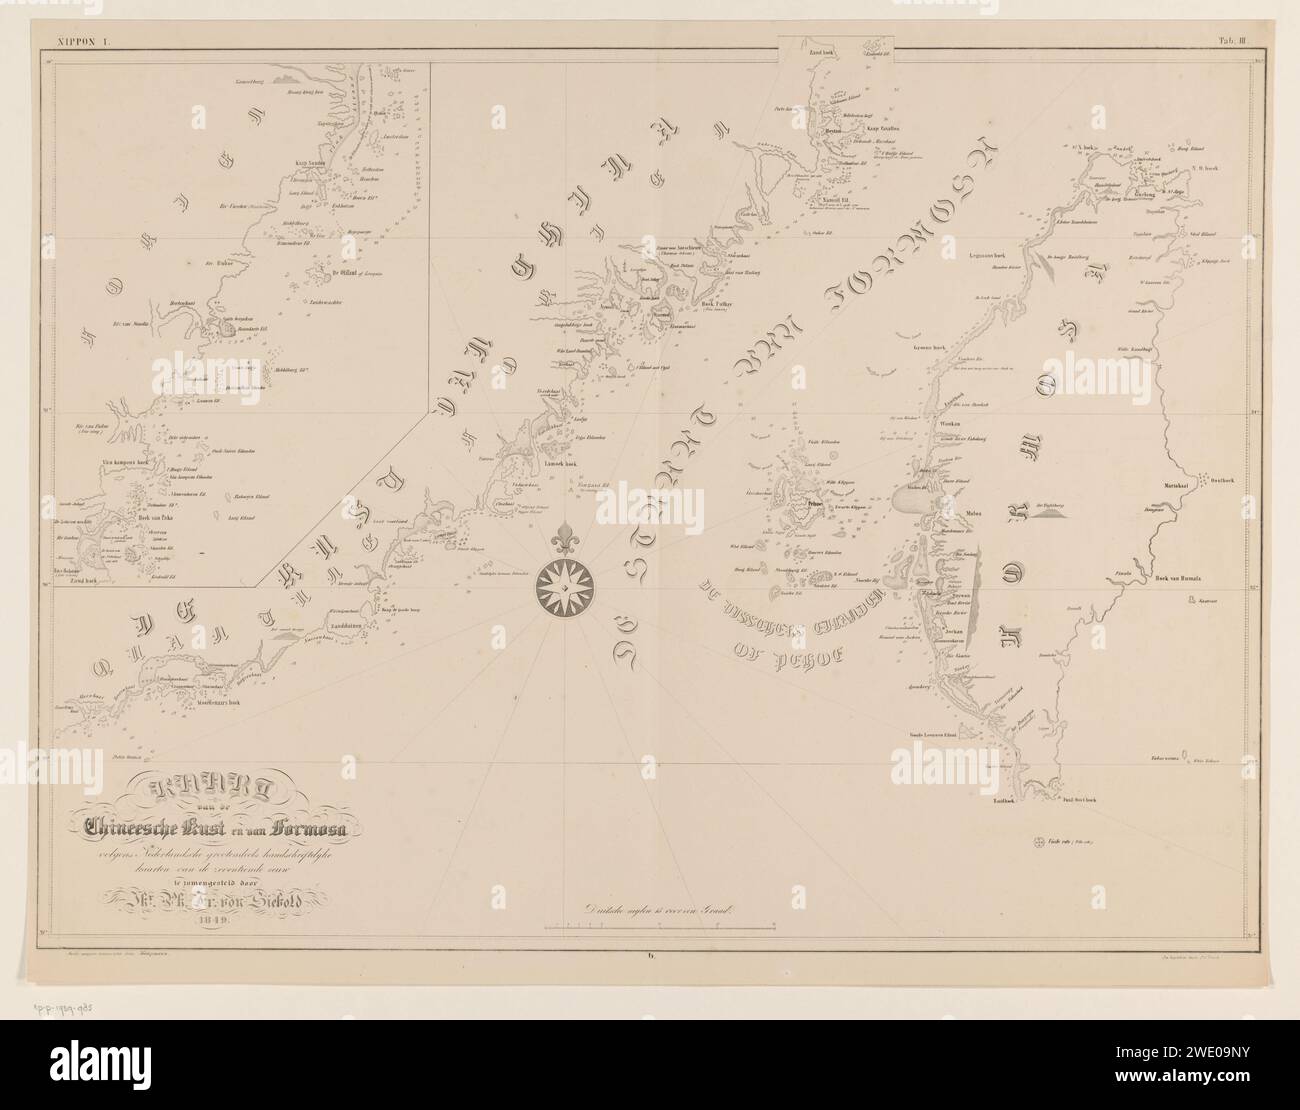 Seekarte der Straße Taiwans oder der Straße Formosa, P.C. Tesch, nach Kampmann, 1849 Druck oben rechts nummeriert: III Papiermarinekarten Straße von Taiwan. China. Taiwan Stockfoto